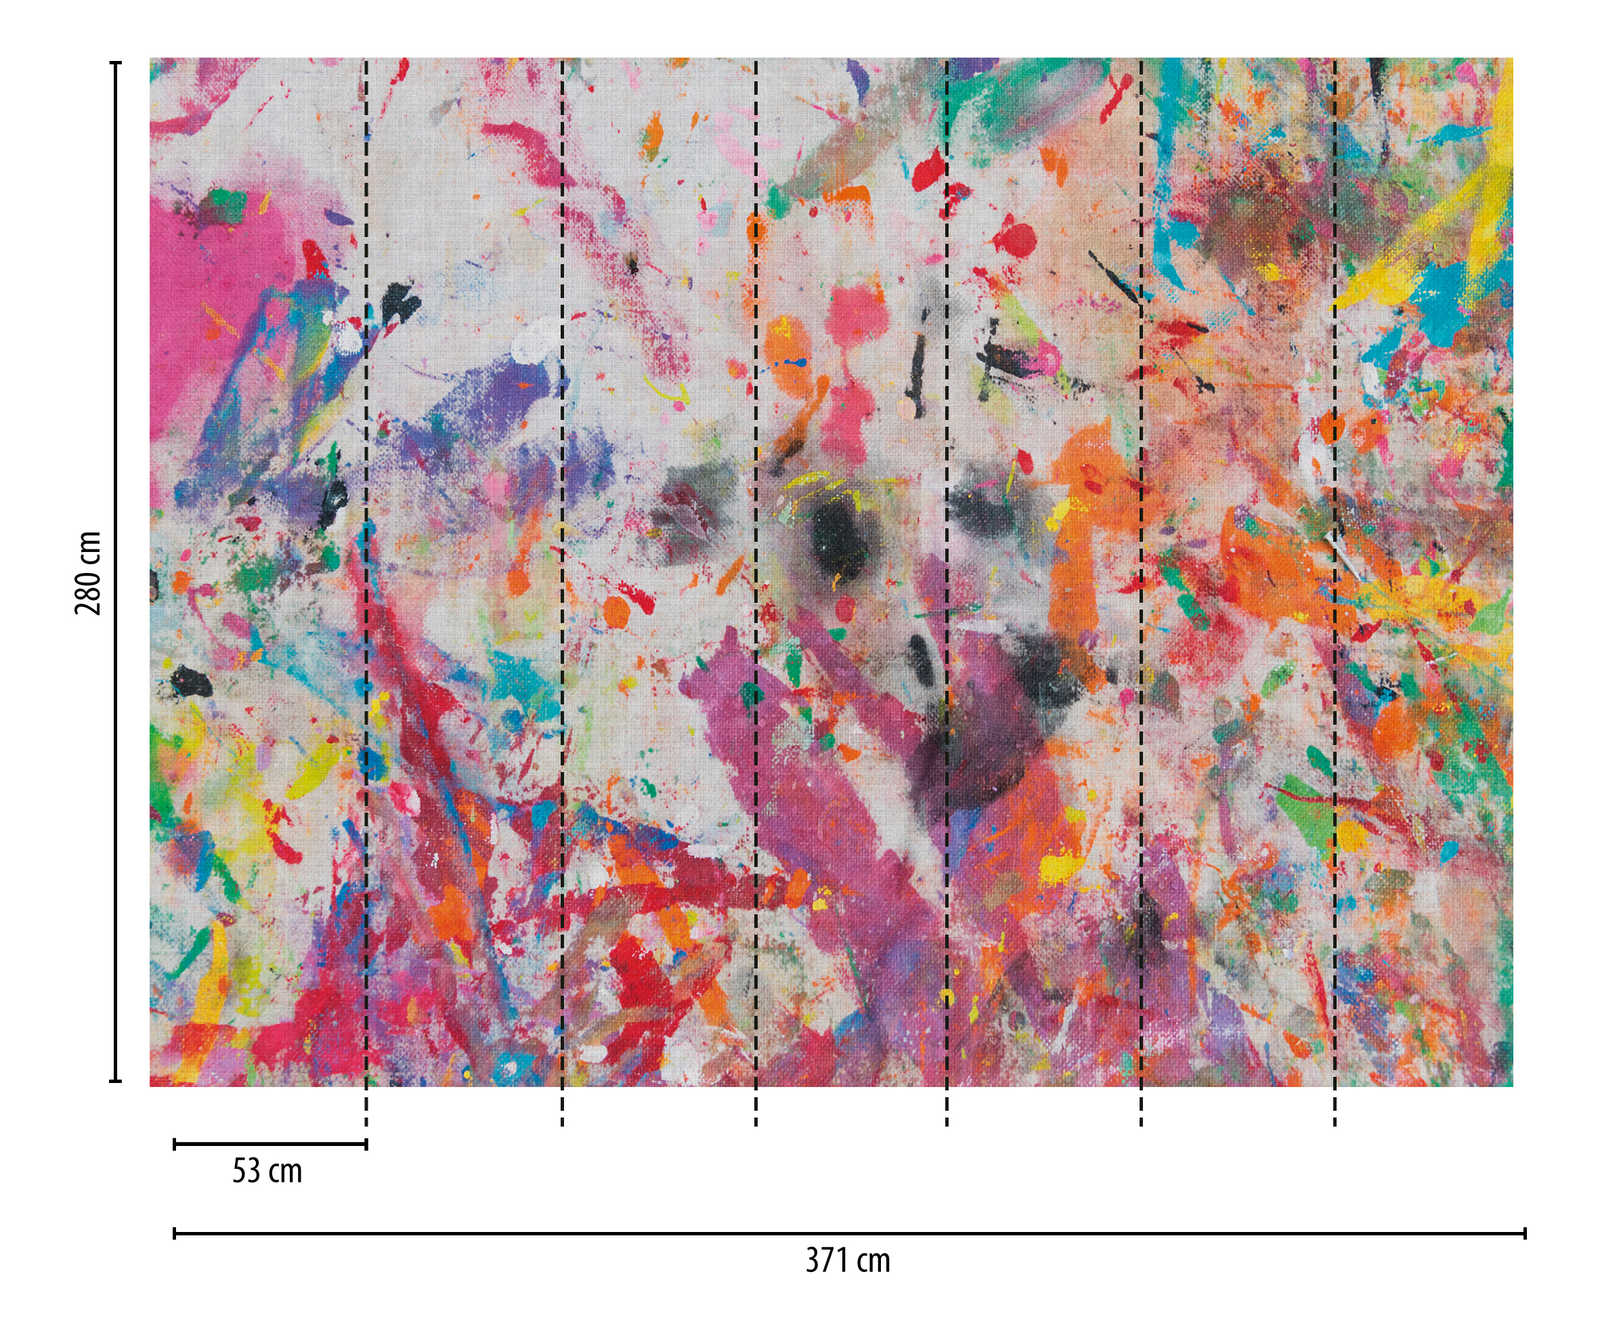             Behang nieuwigheid - motief behang kleurrijke doek, abstract ontwerp
        